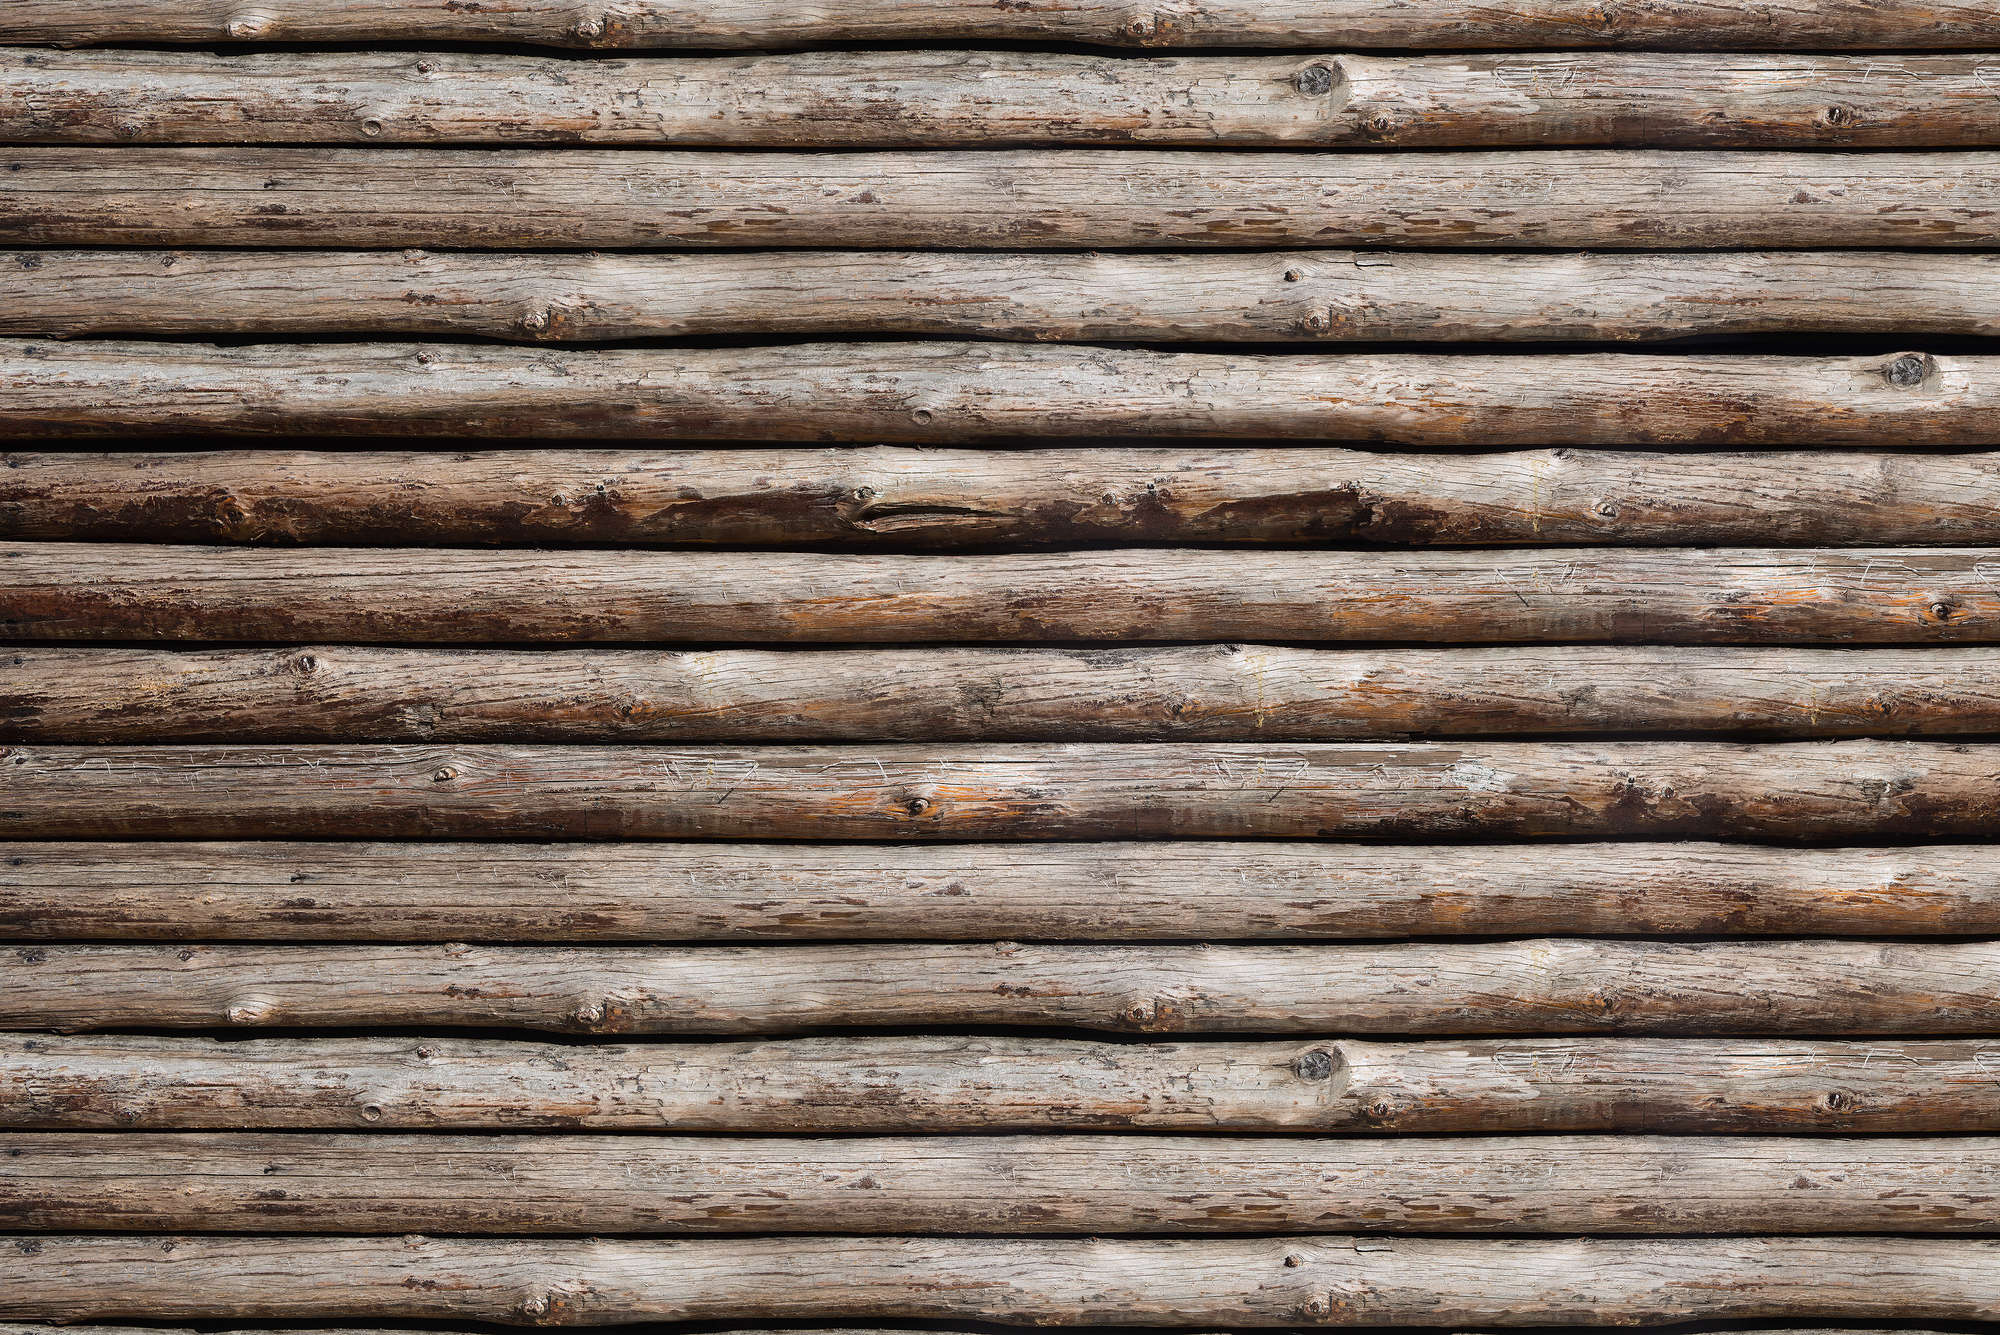             Mural de madera Cabañas de troncos en la pared sobre vellón liso de primera calidad
        